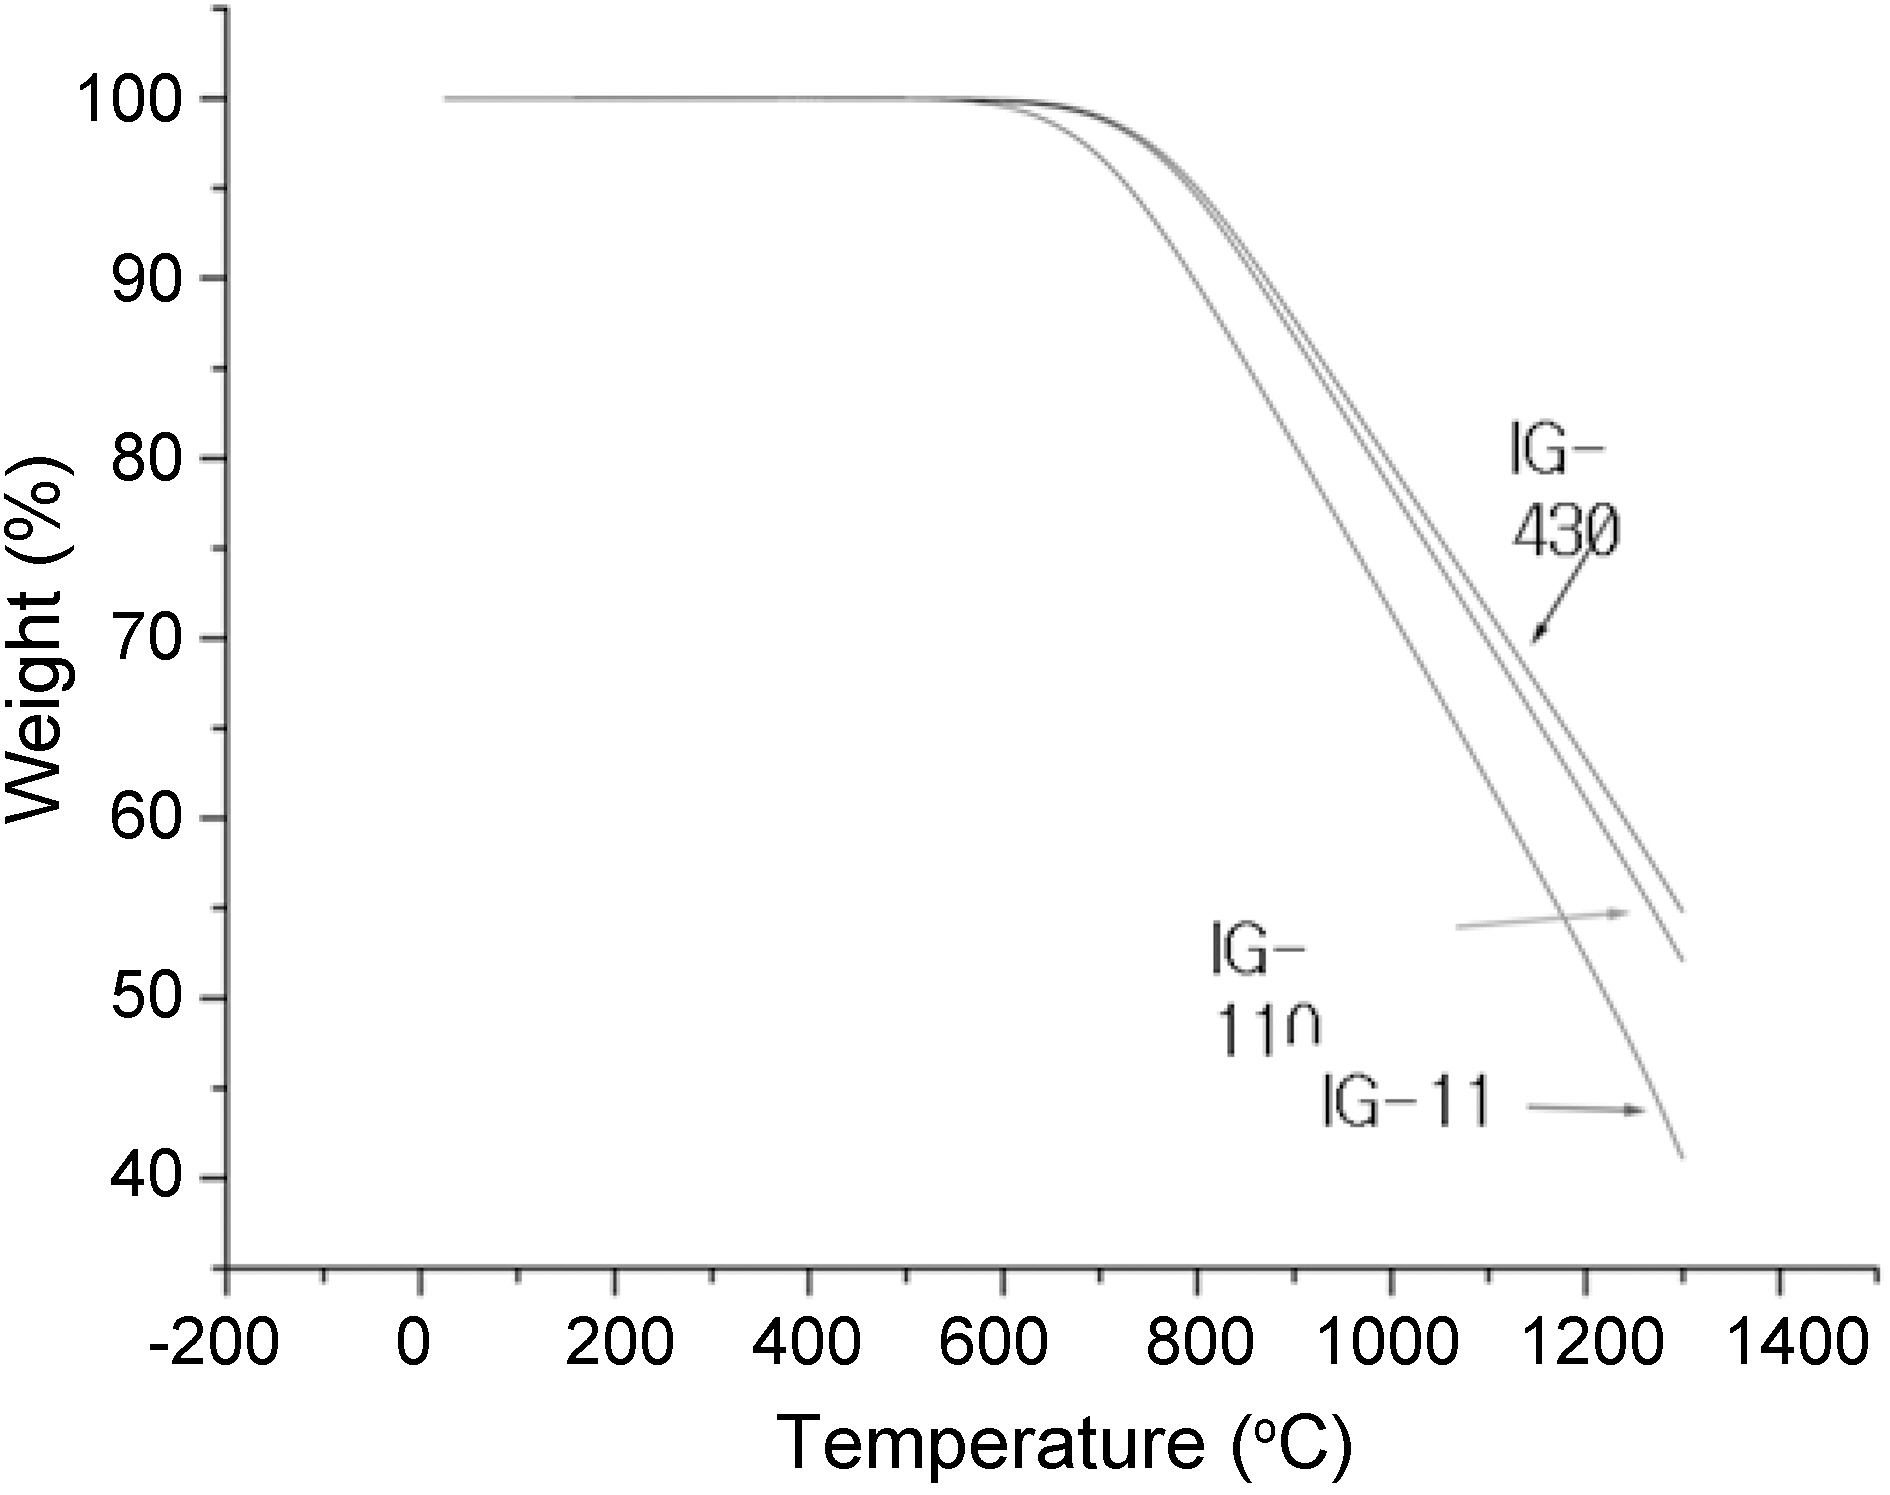 원자로급 흑연 (IG-11 IG-110 IG-430)의 온도에 따른무게감소 변화[19].